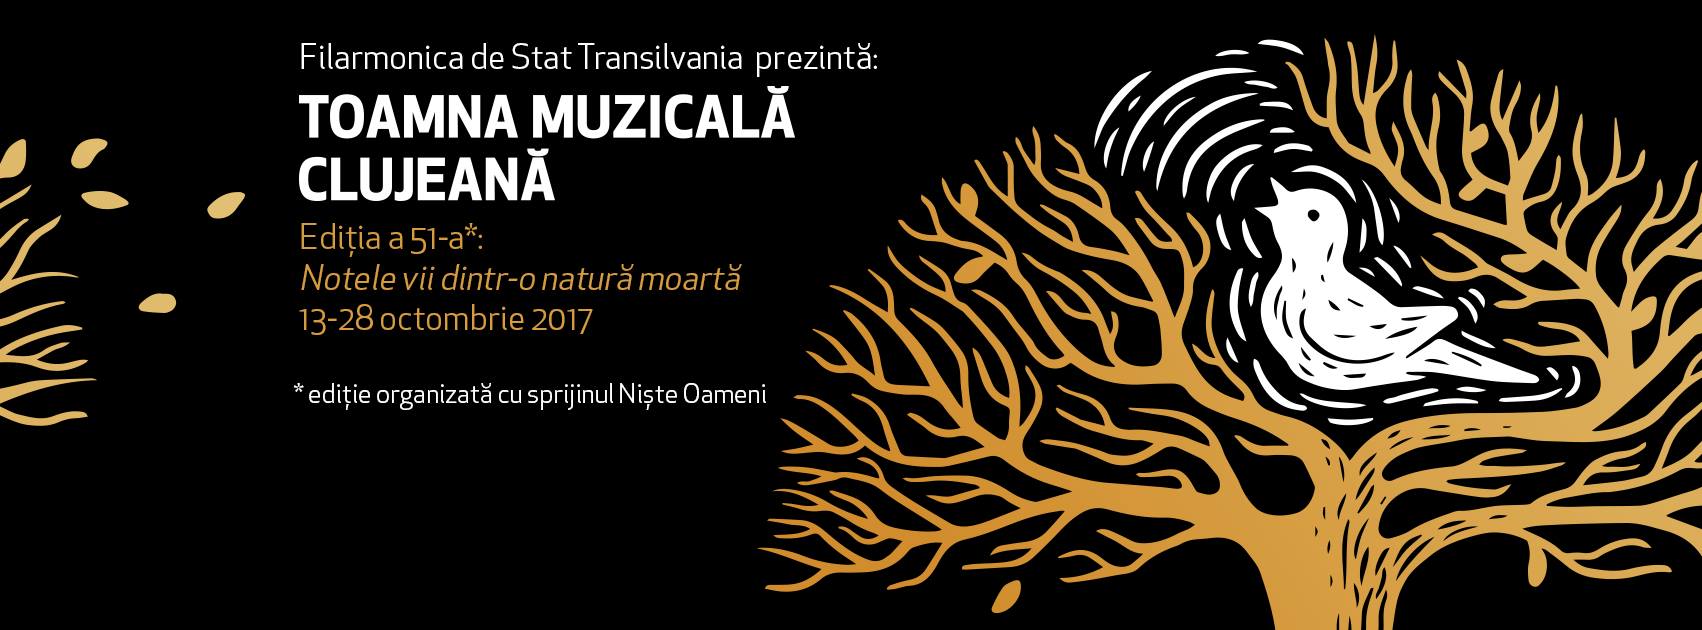 Toamna Muzicală Clujeană 2017